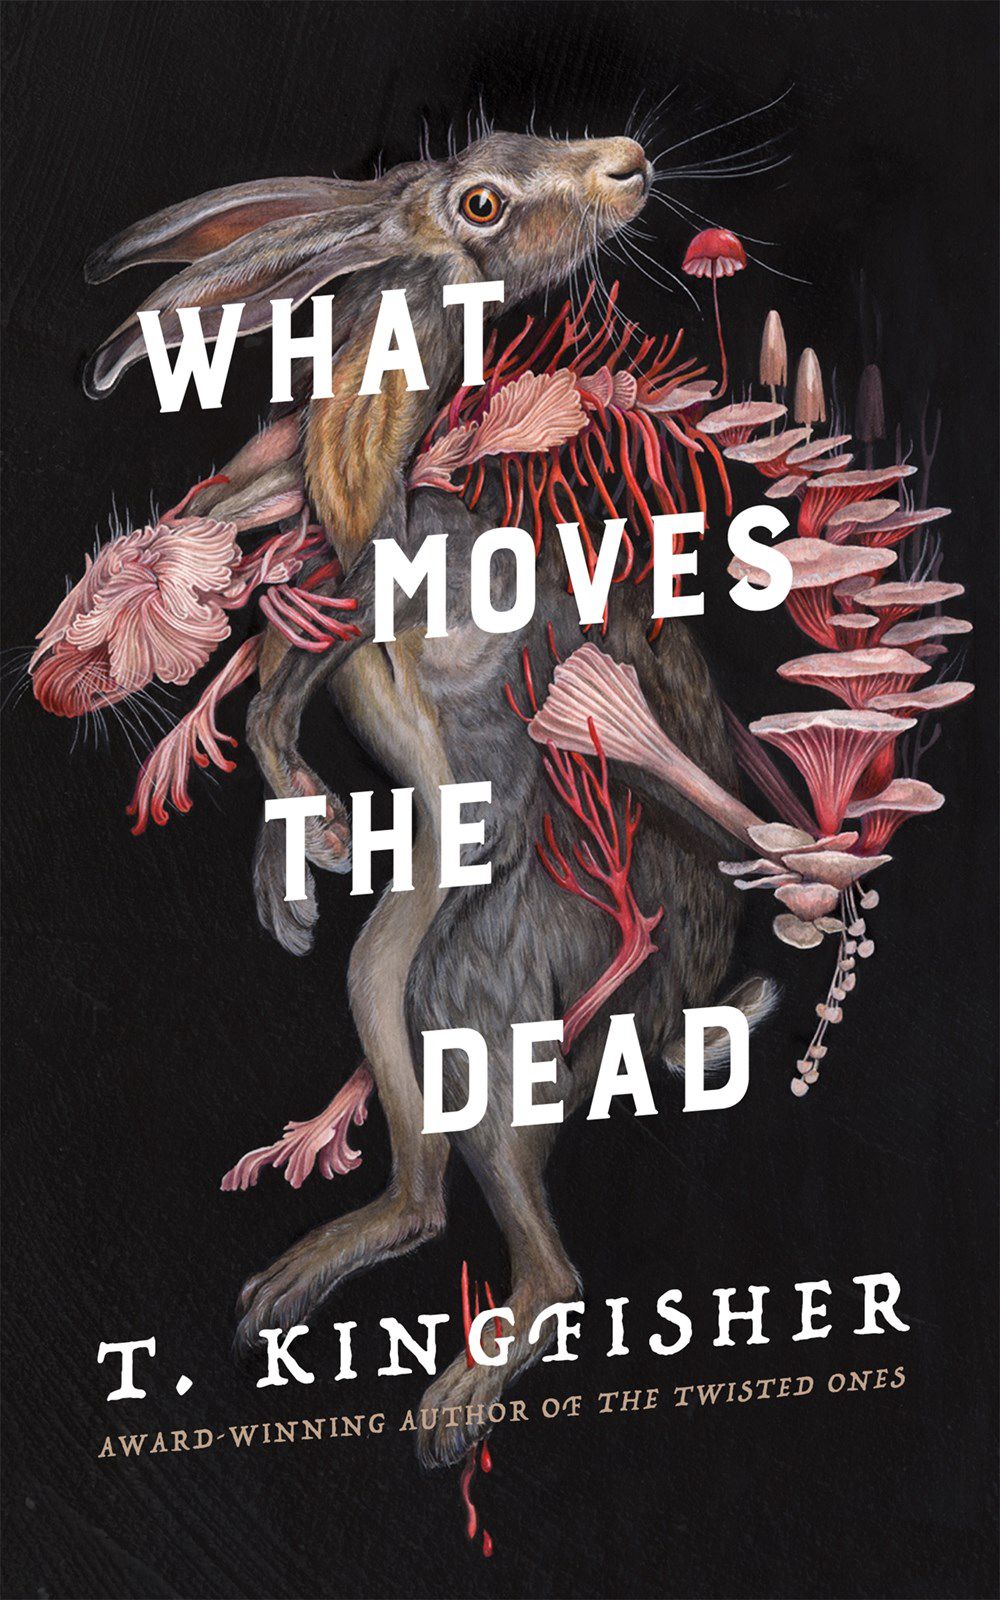 La copertina di What Moves the Dead di T. Kingfisher, un'immagine surreale di un coniglio inframmezzato da uno scheletro di coniglio fatto di funghi.